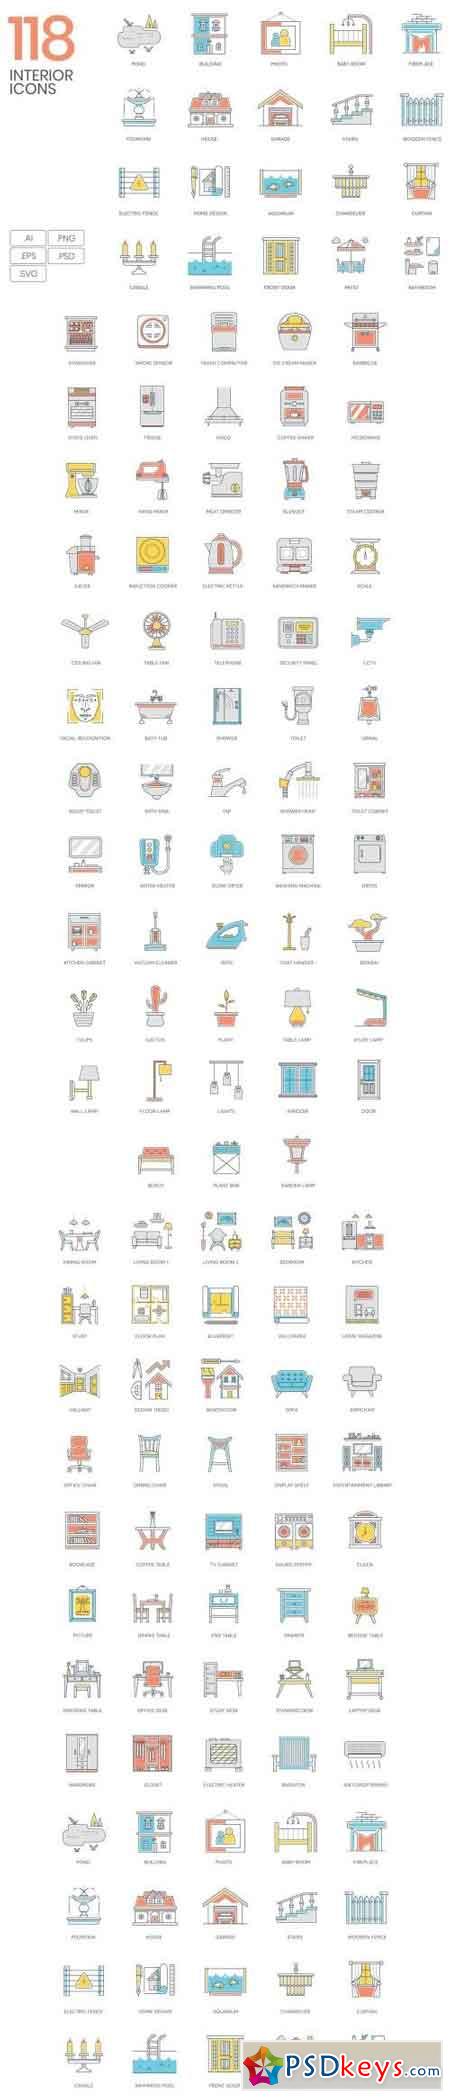 118 Interior Design & Furniture Icons